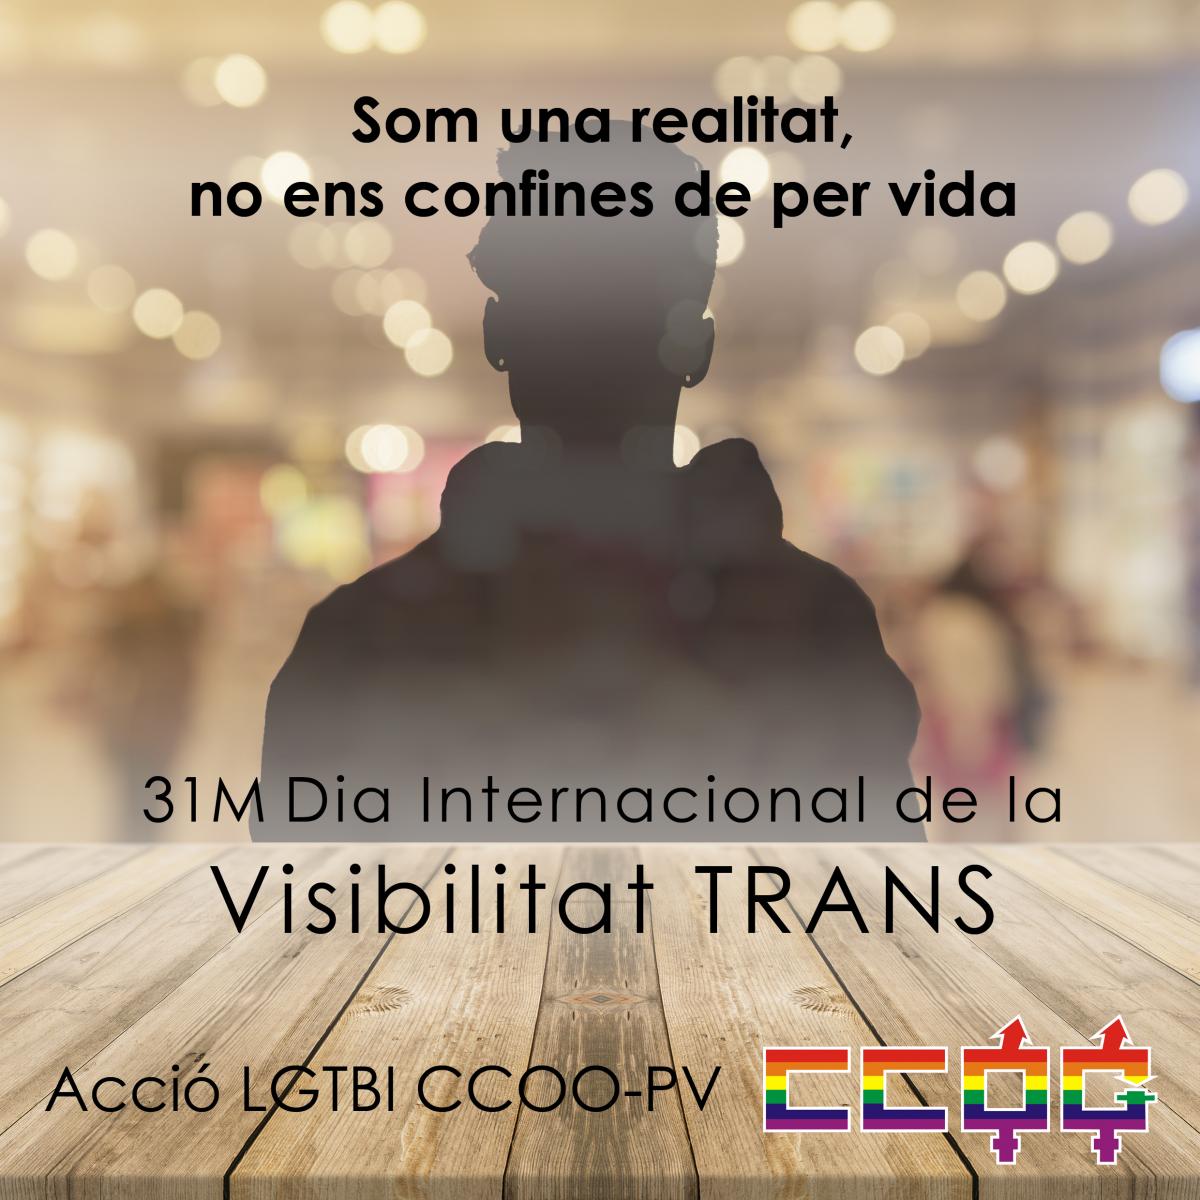 31M Dia Internacional de la Visibilidad TRANS